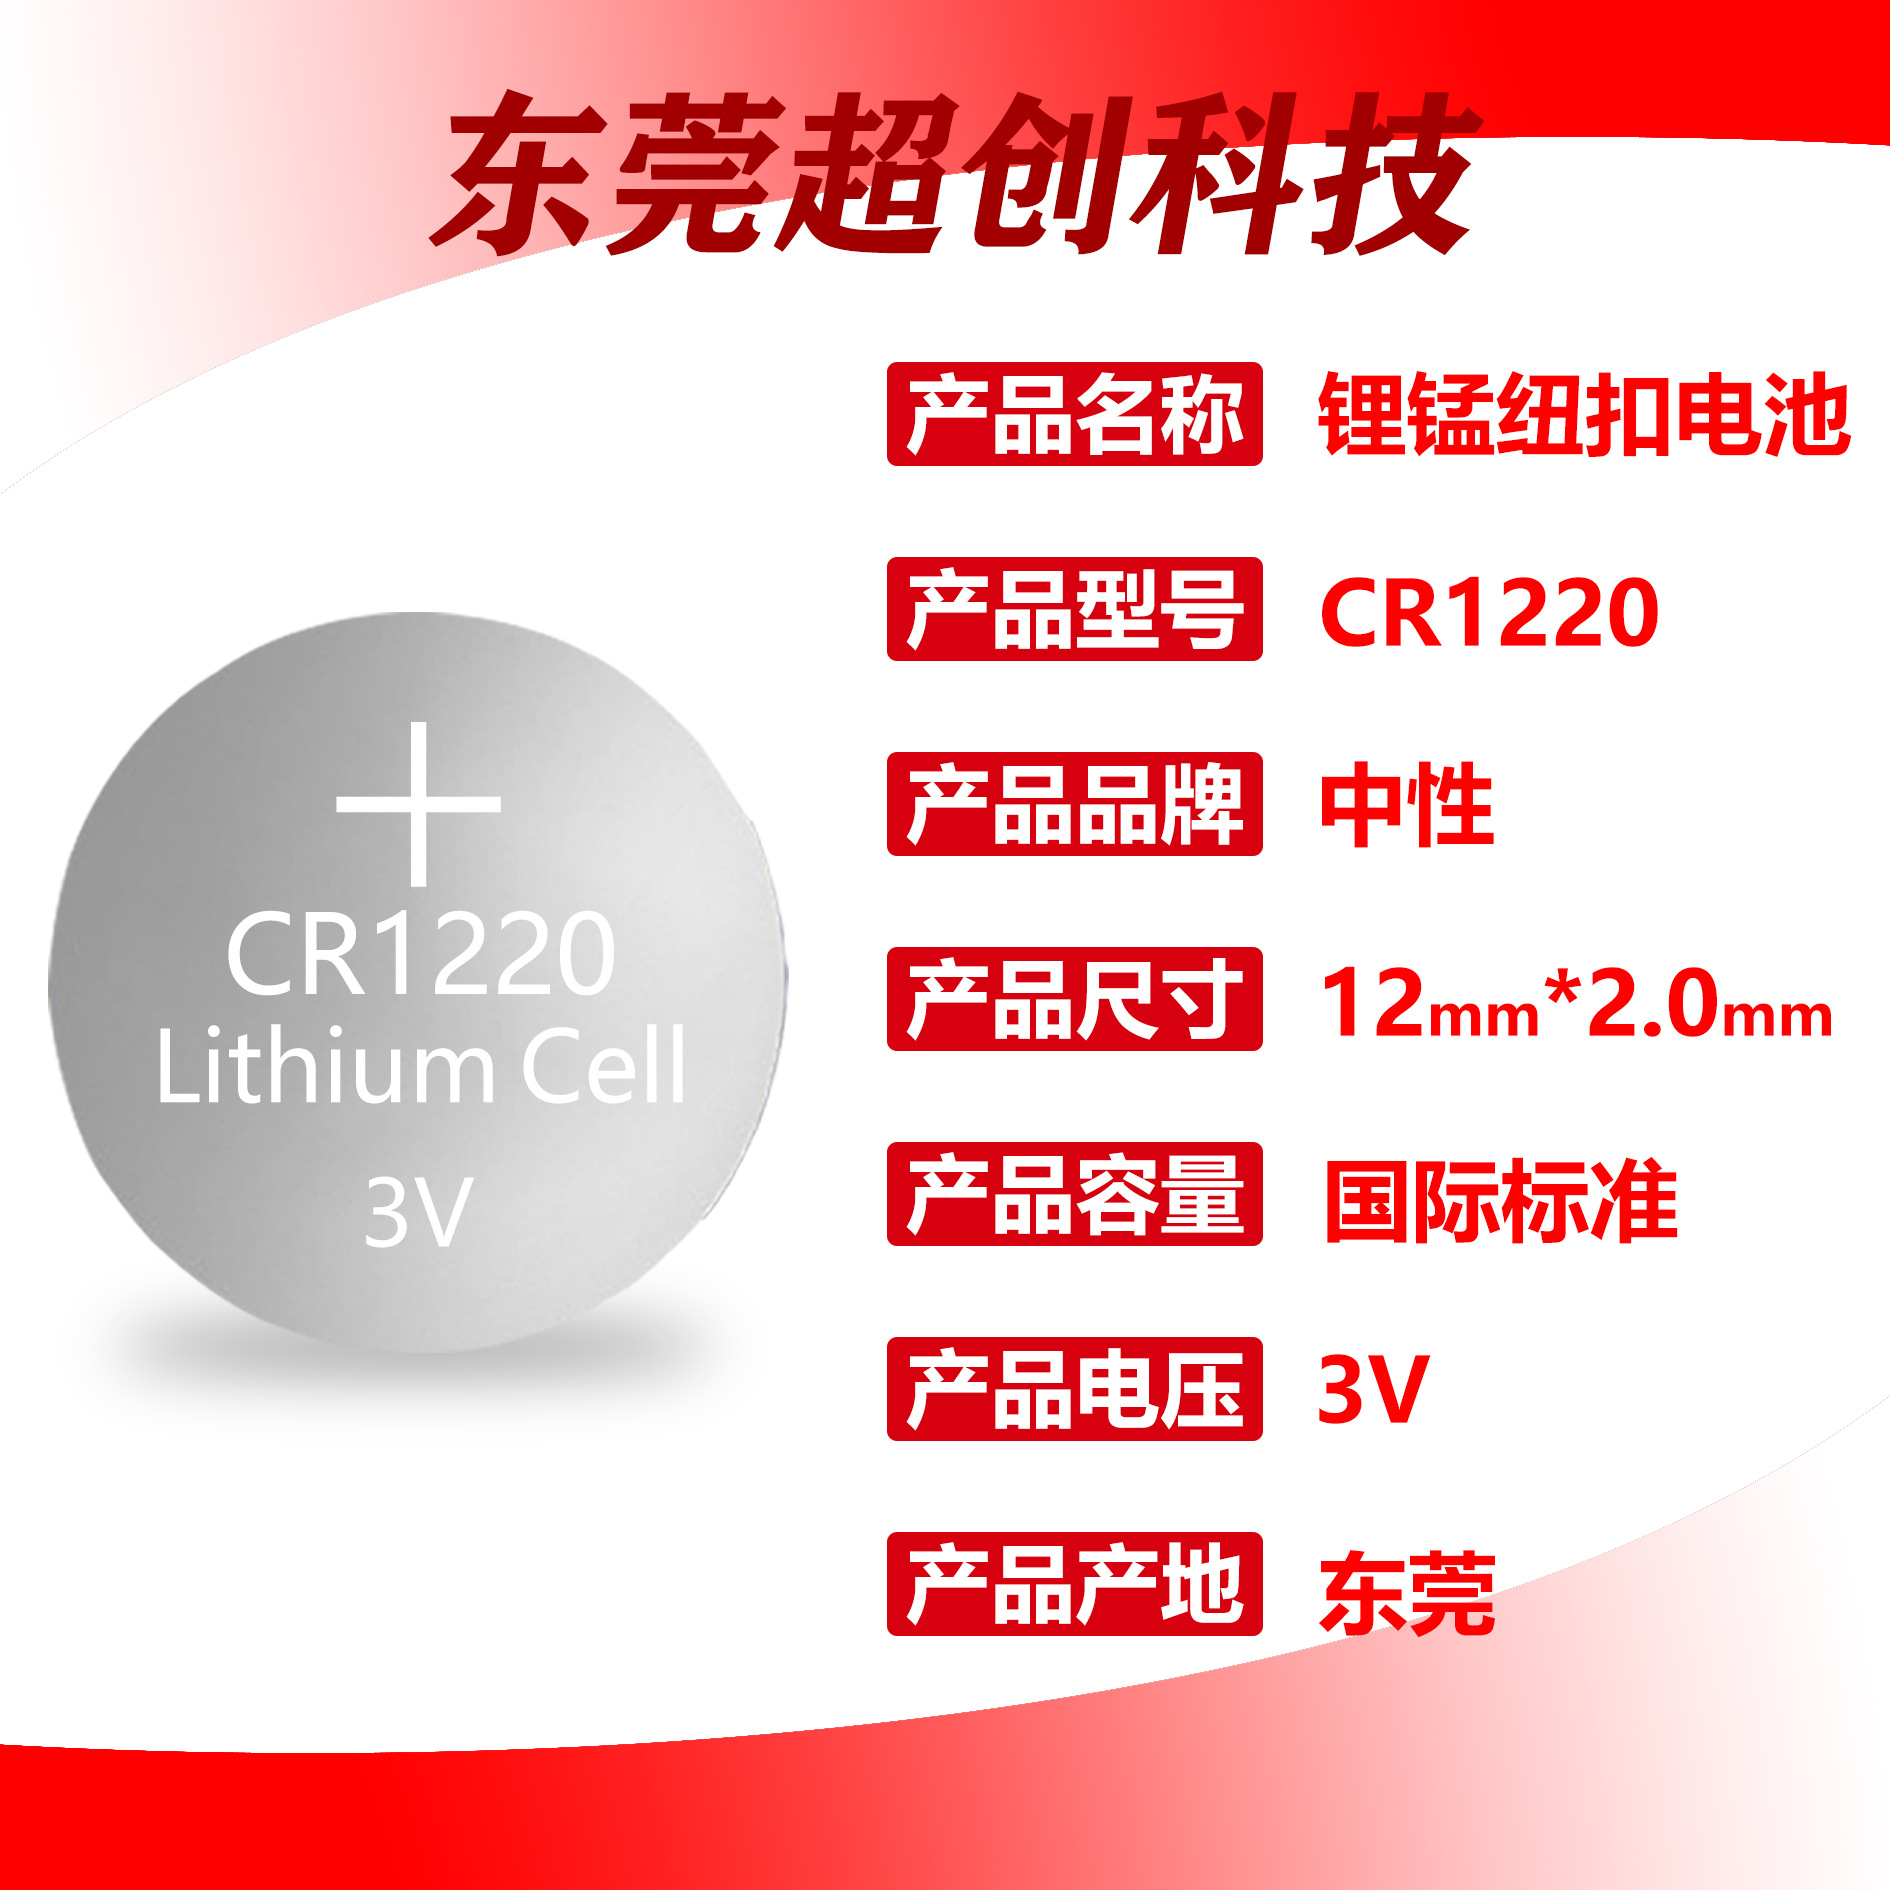 cr1220/CR1220产品图